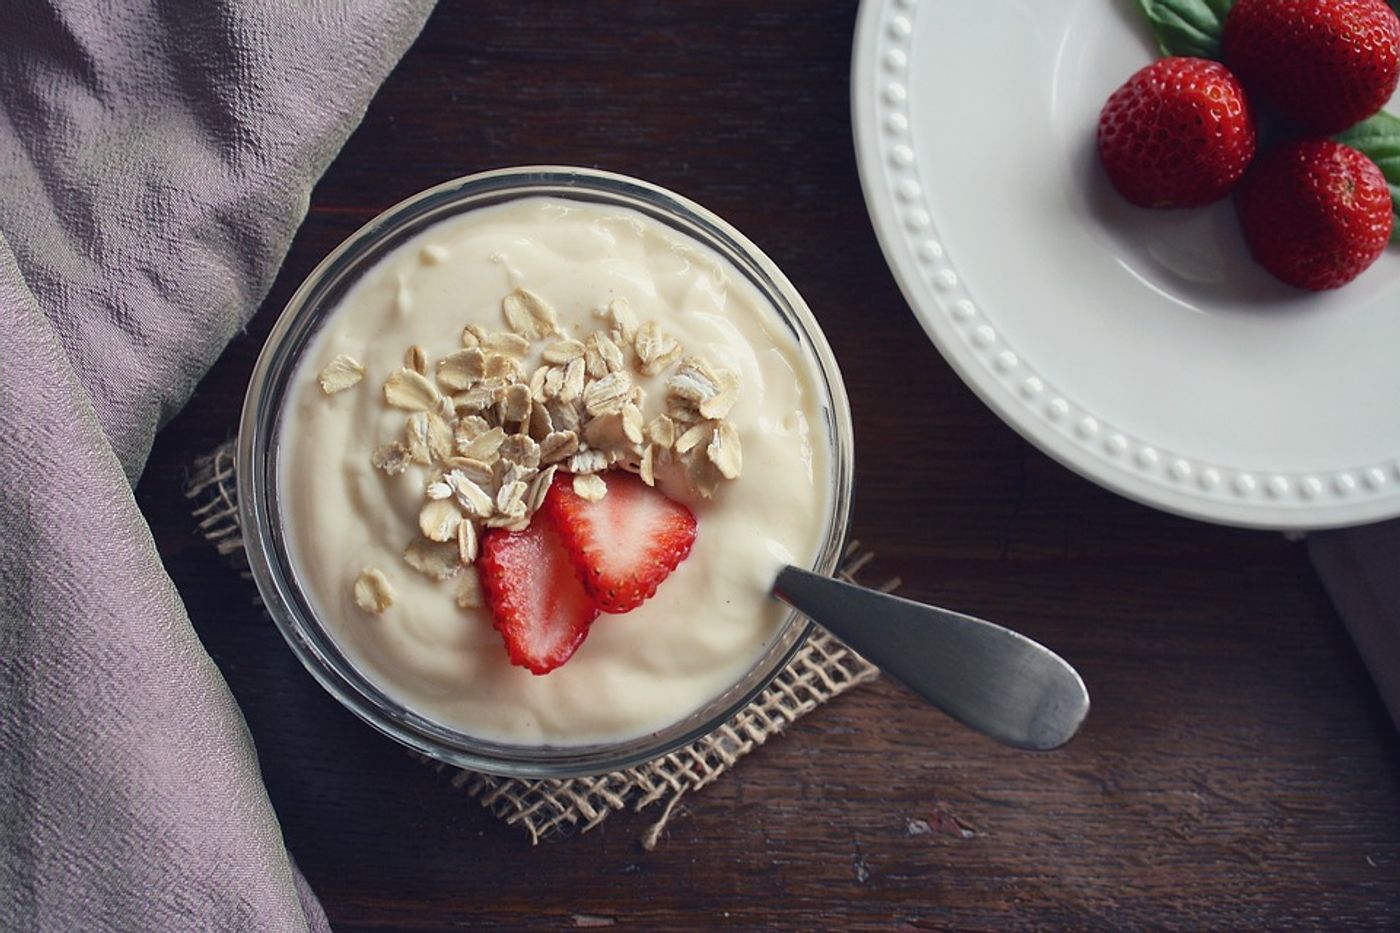 Increased yogurt consumption could decrease risk of adenomas in men. Photo: Pixabay